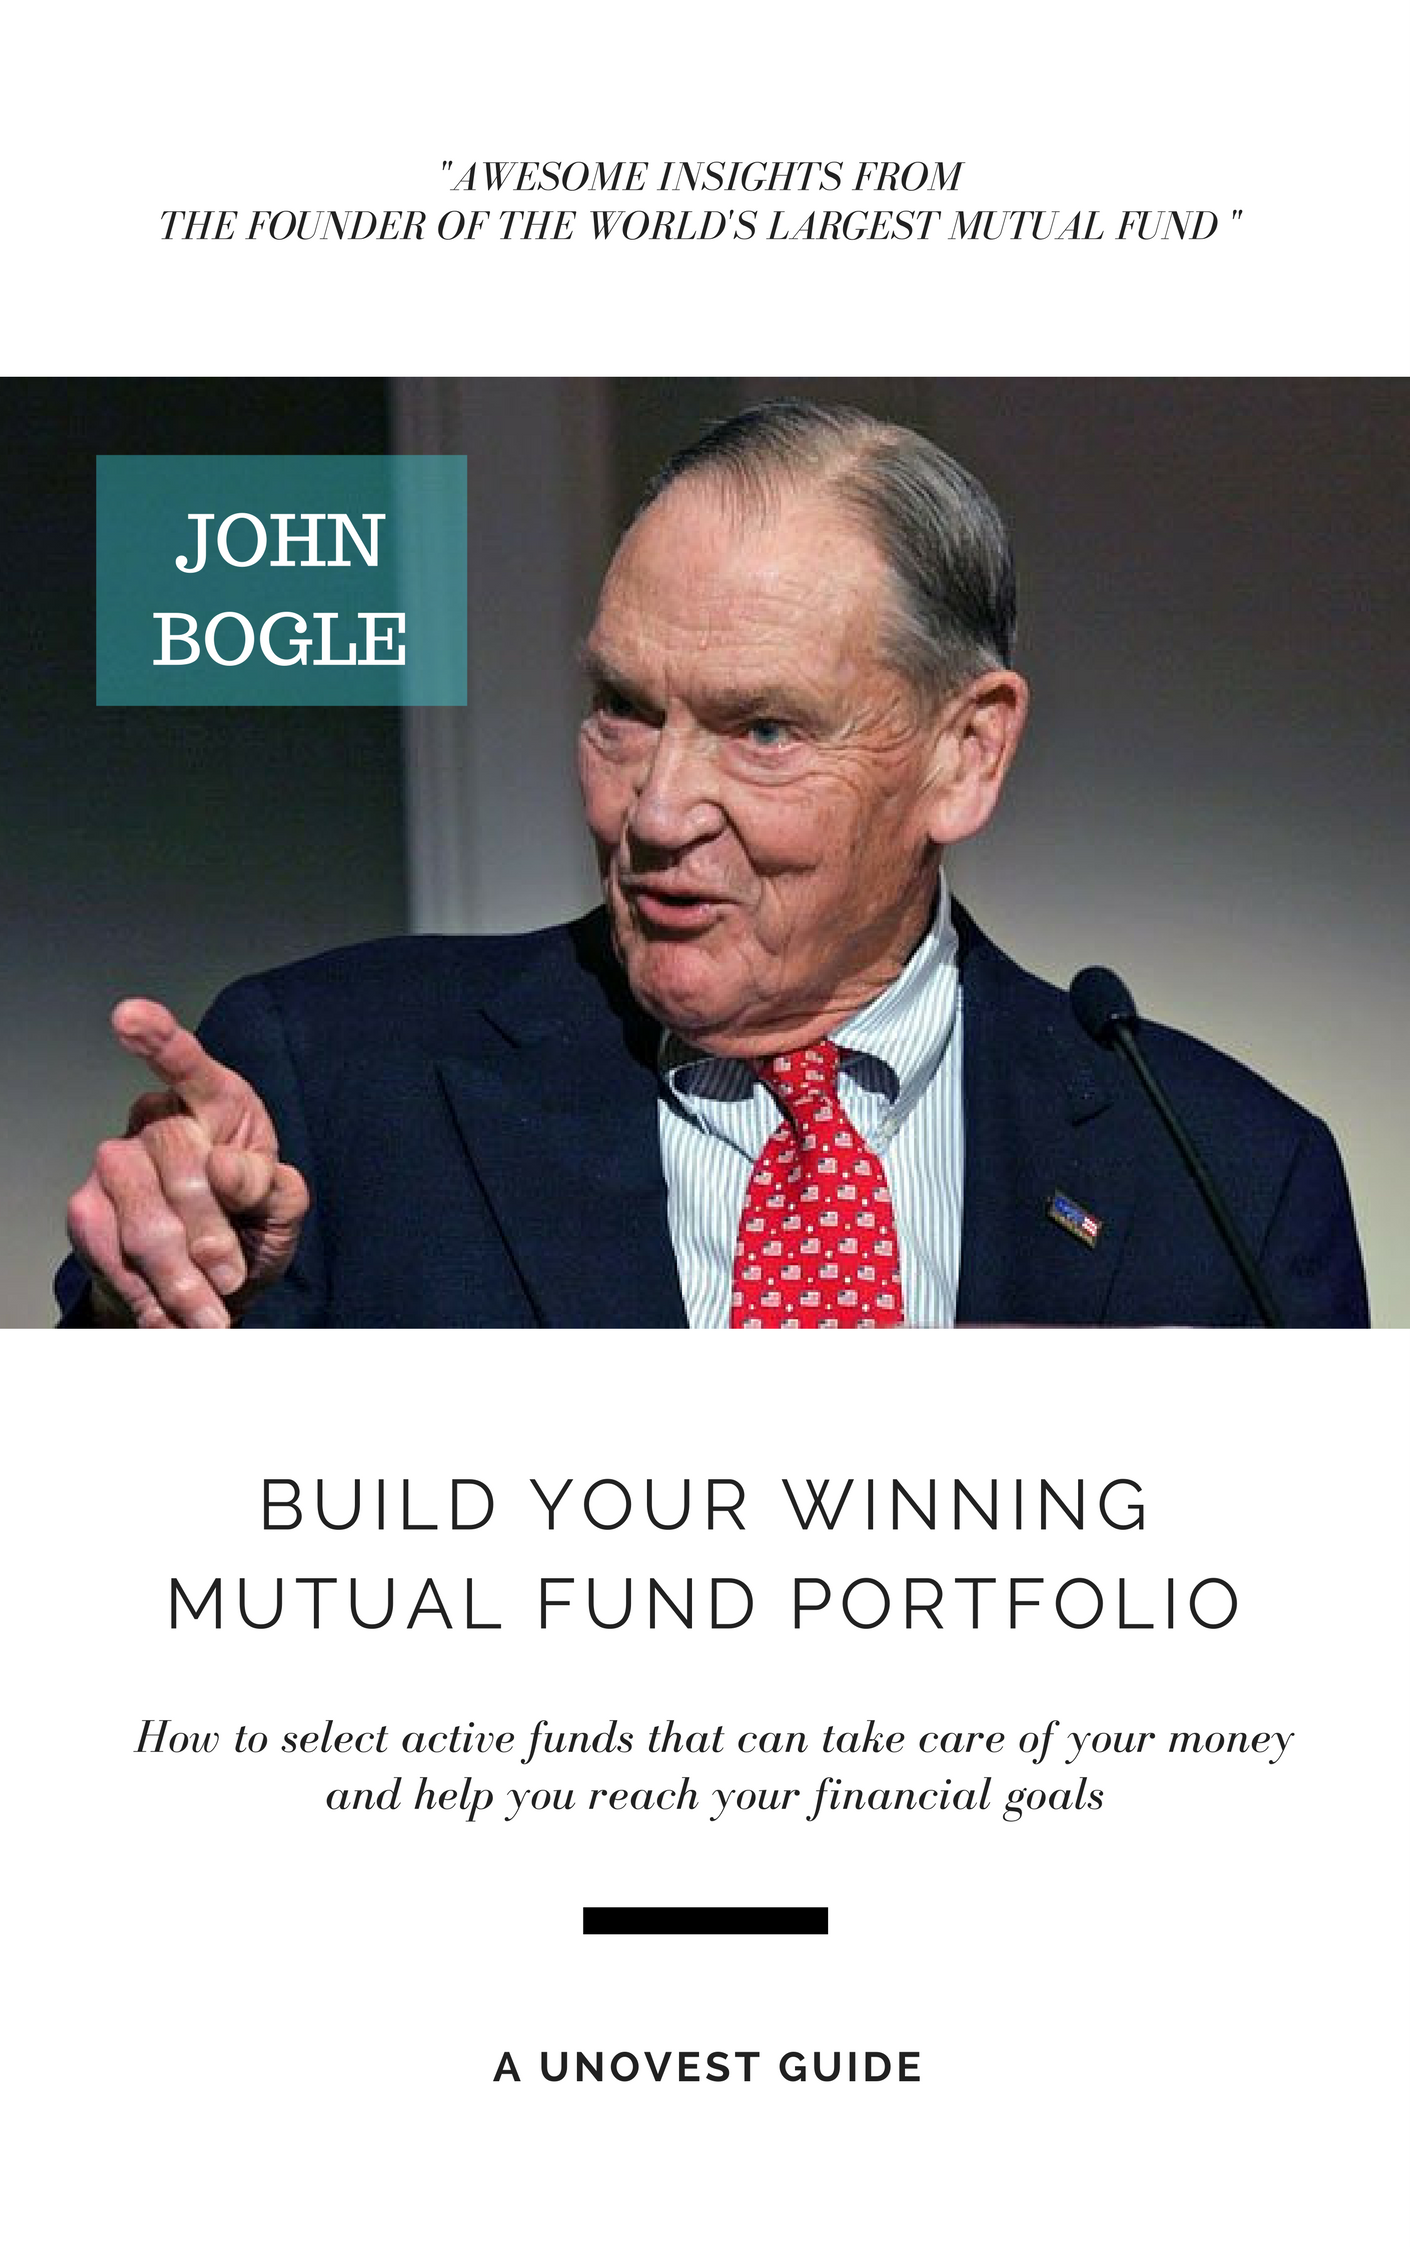 JOHN BOGLE - BUILD YOUR WINNING MUTUAL FUND PORTFOLIO